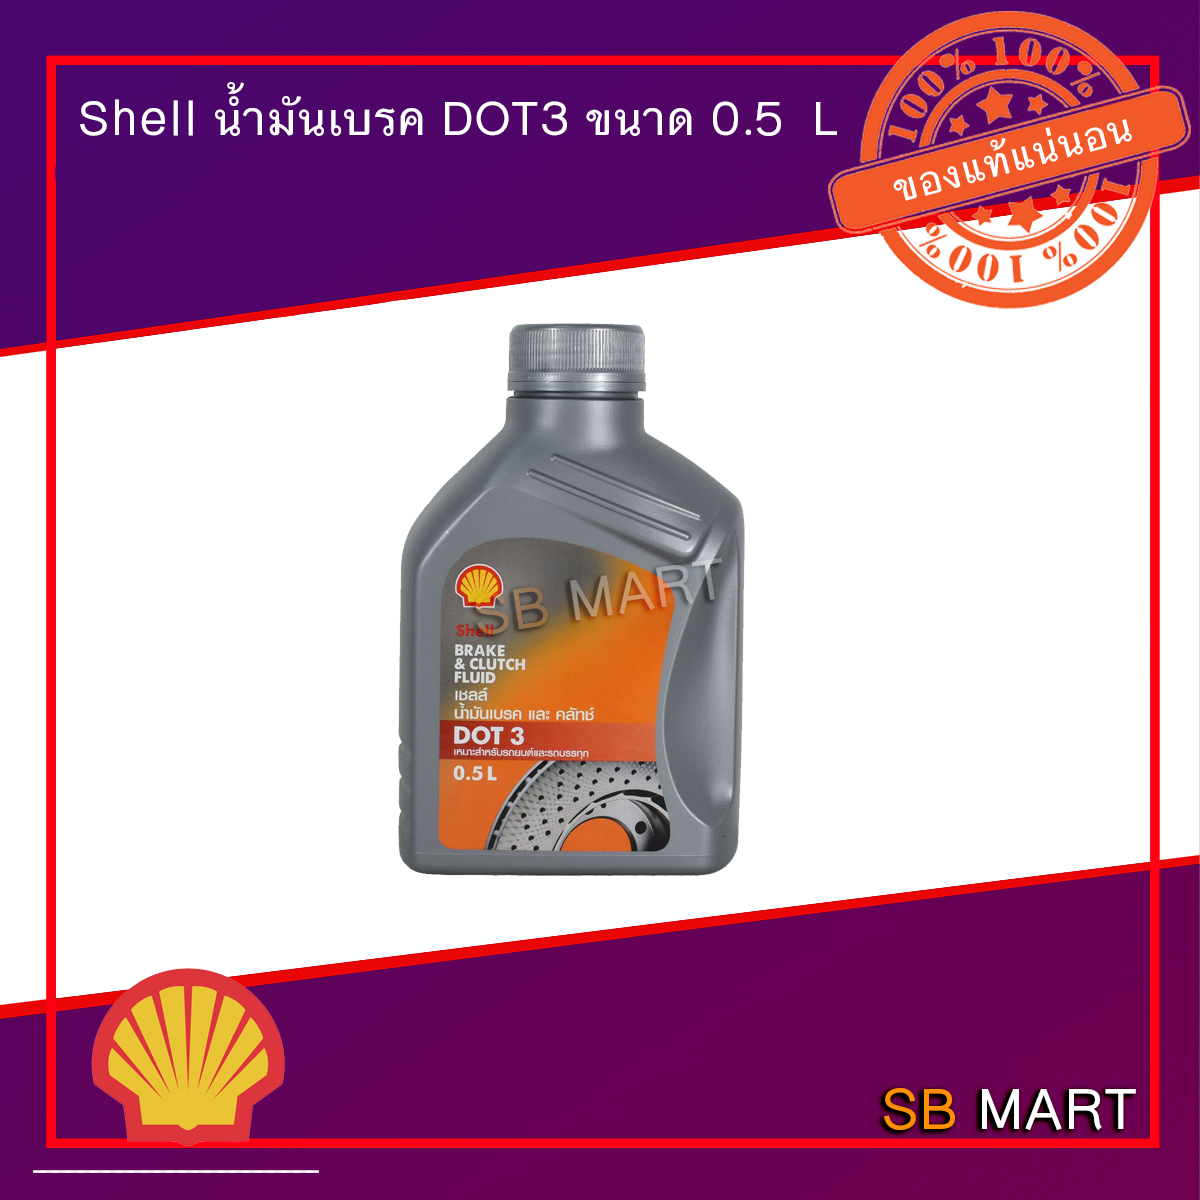 Shell น้ำมันเบรค DOT3 ขนาด 0.5 ลิตร